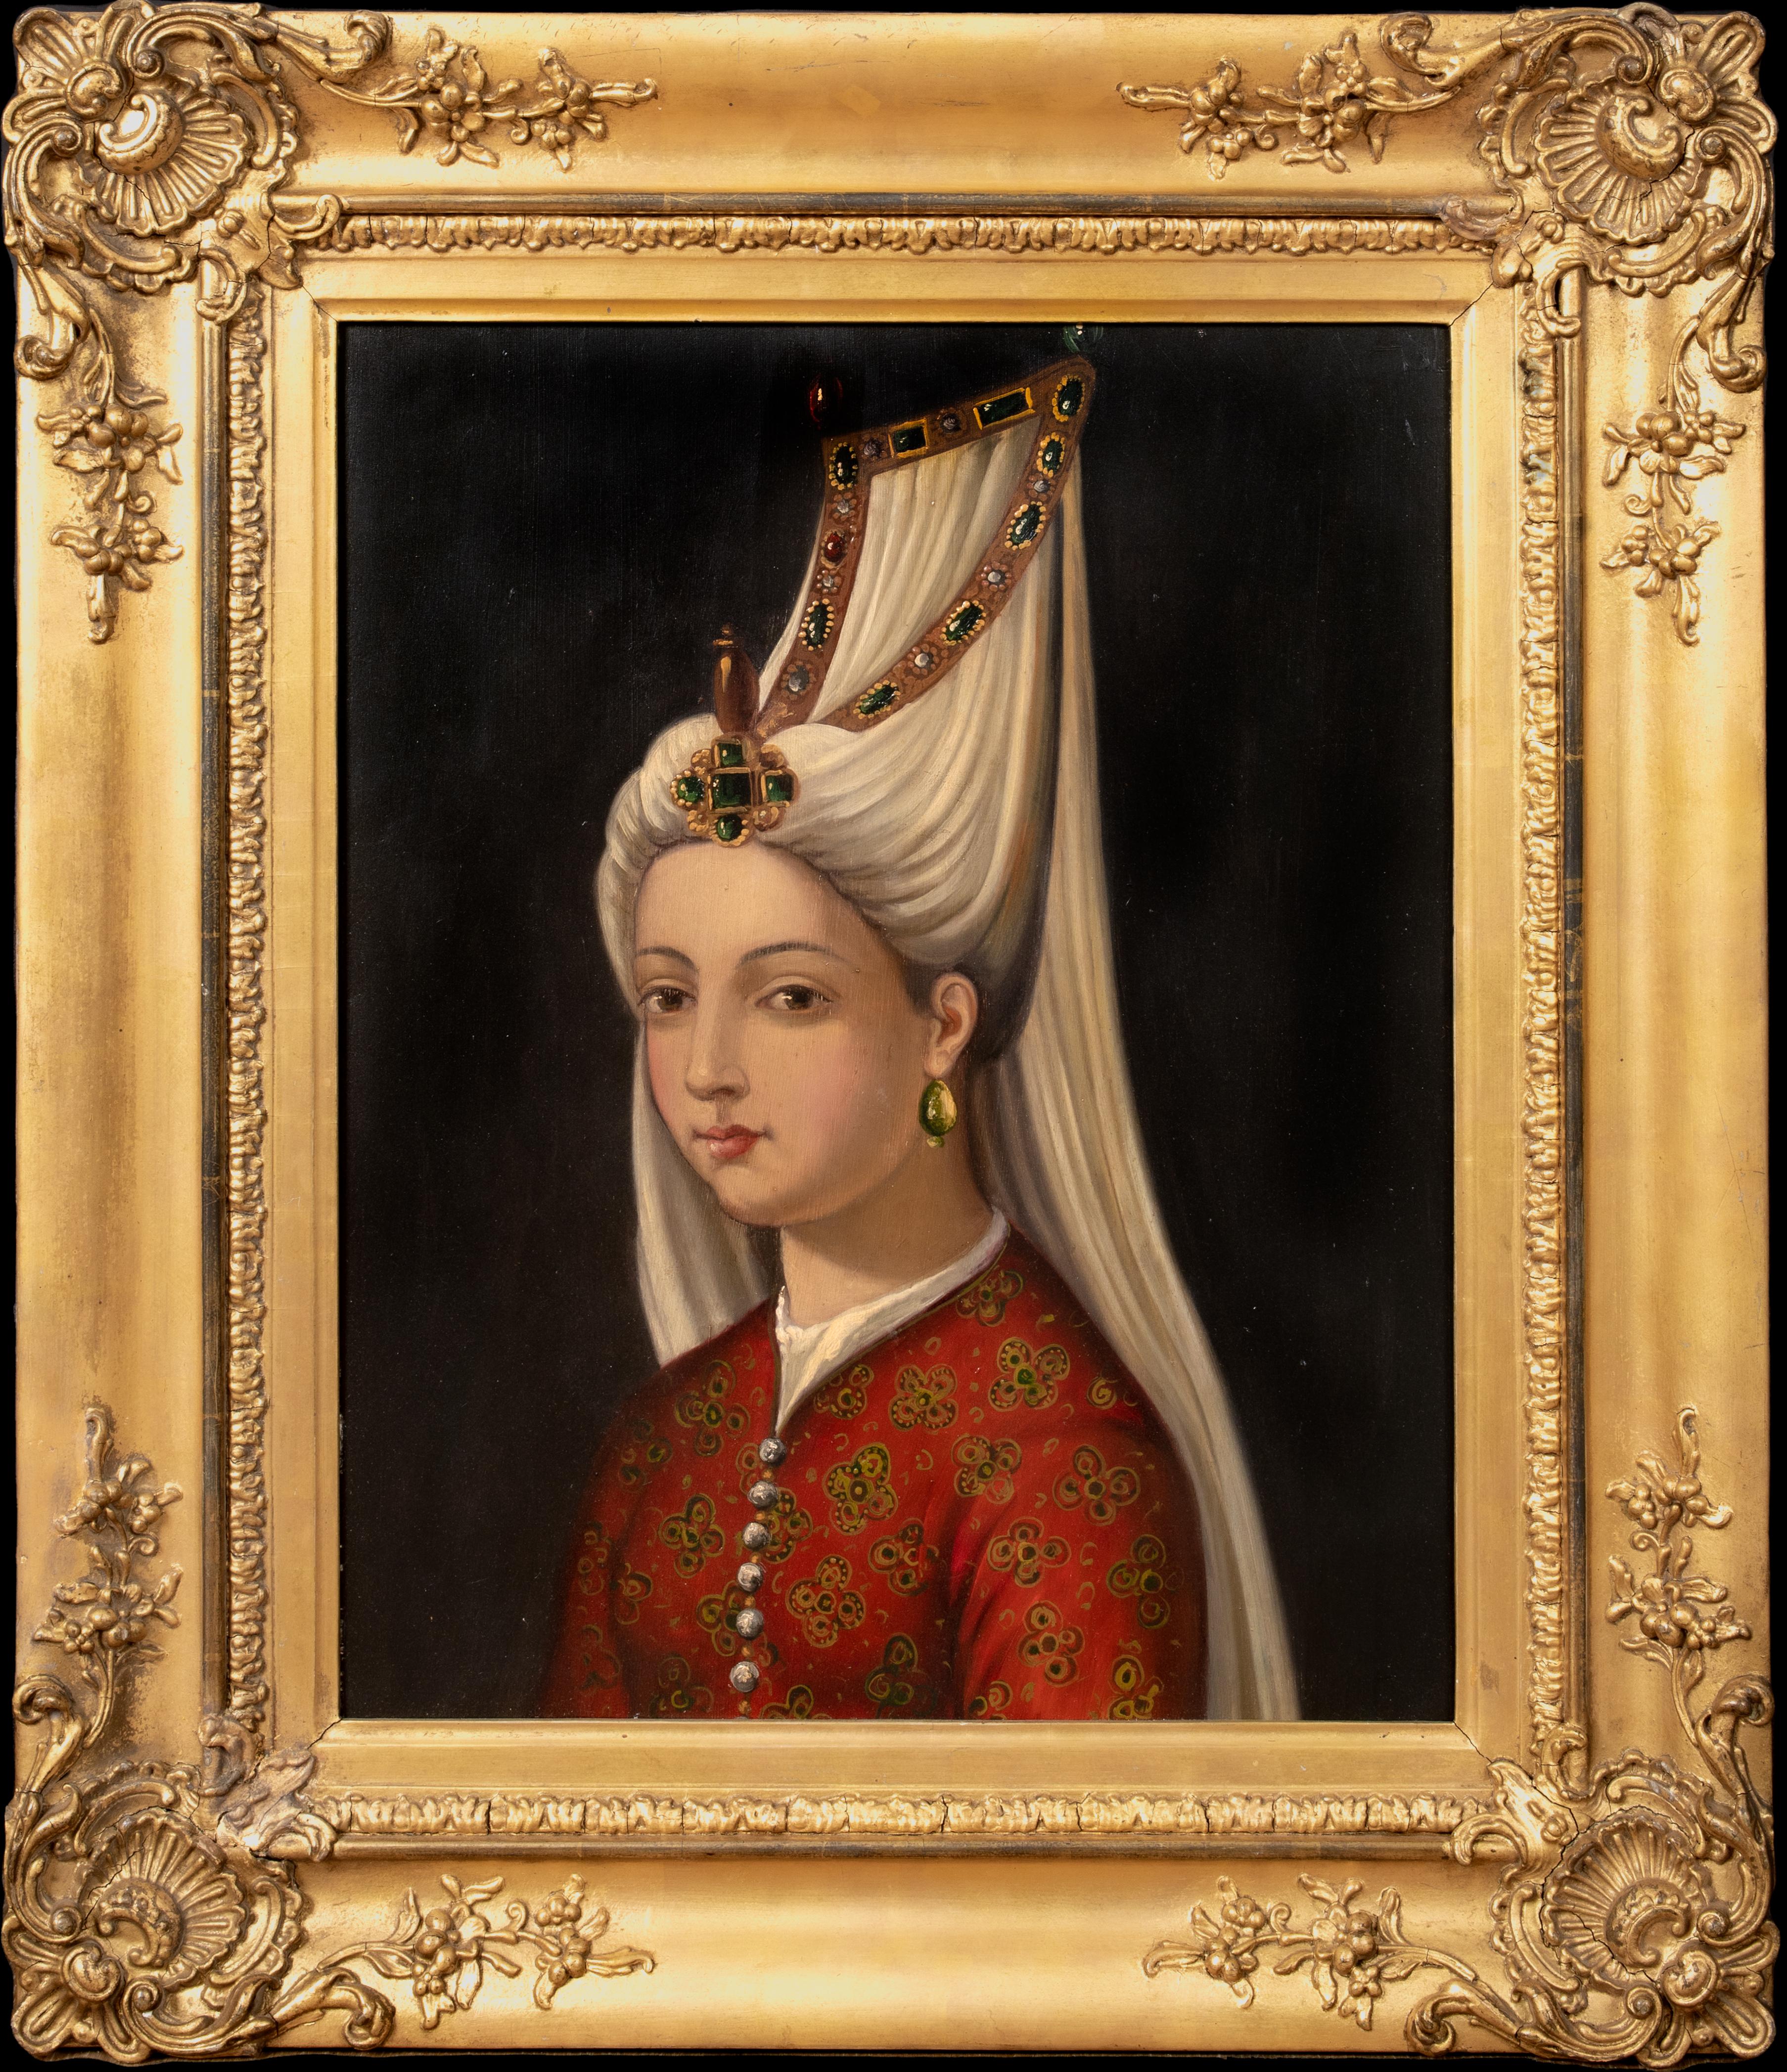 Unknown Portrait Painting - Portrait Of Princess Mihrimah Sultan (1522-1578)